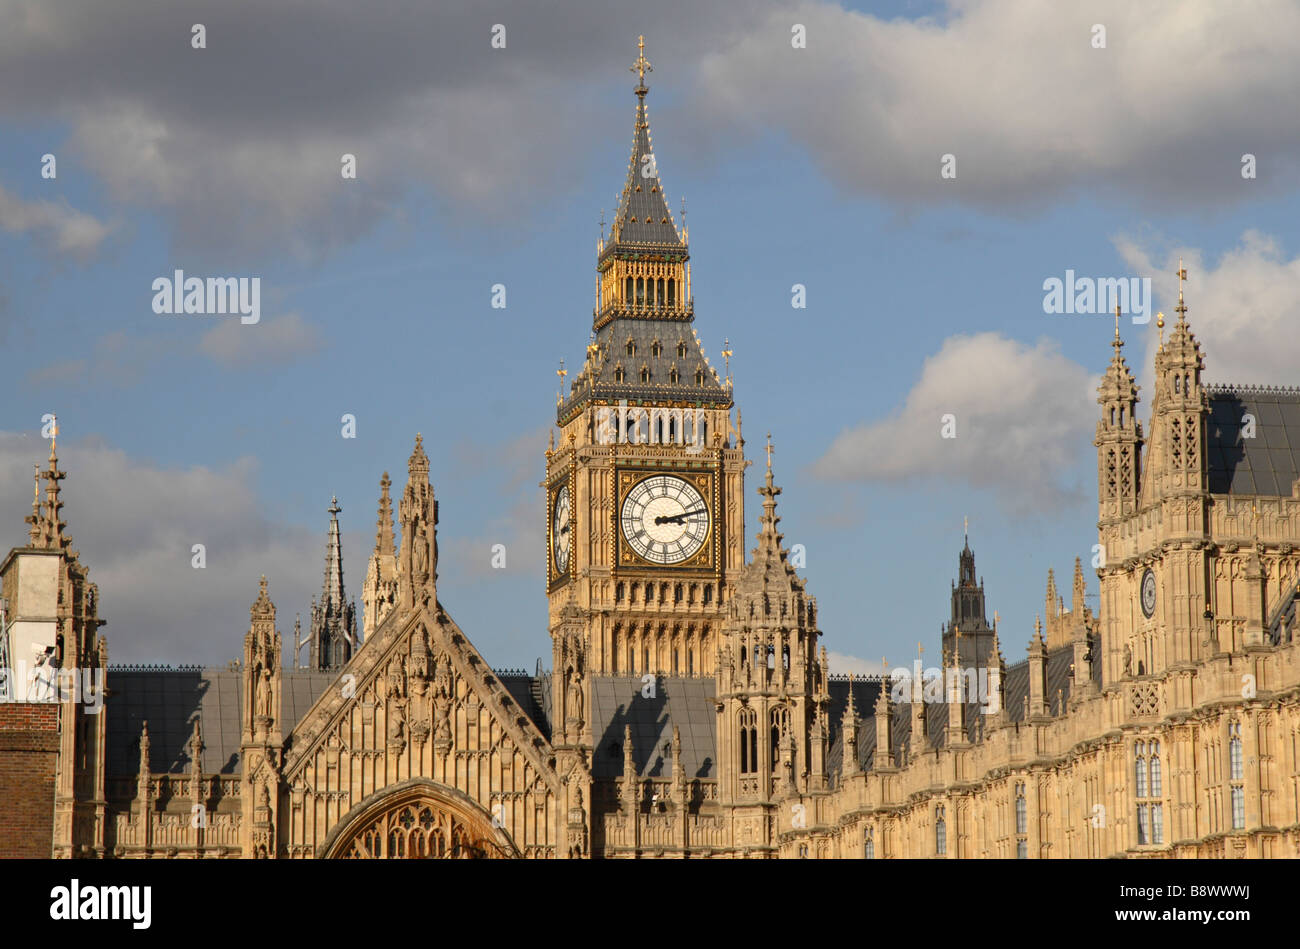 Elizabeth Tower oder Big Ben und der Palace of Westminster in London England.  Mrz 09 Stockfoto